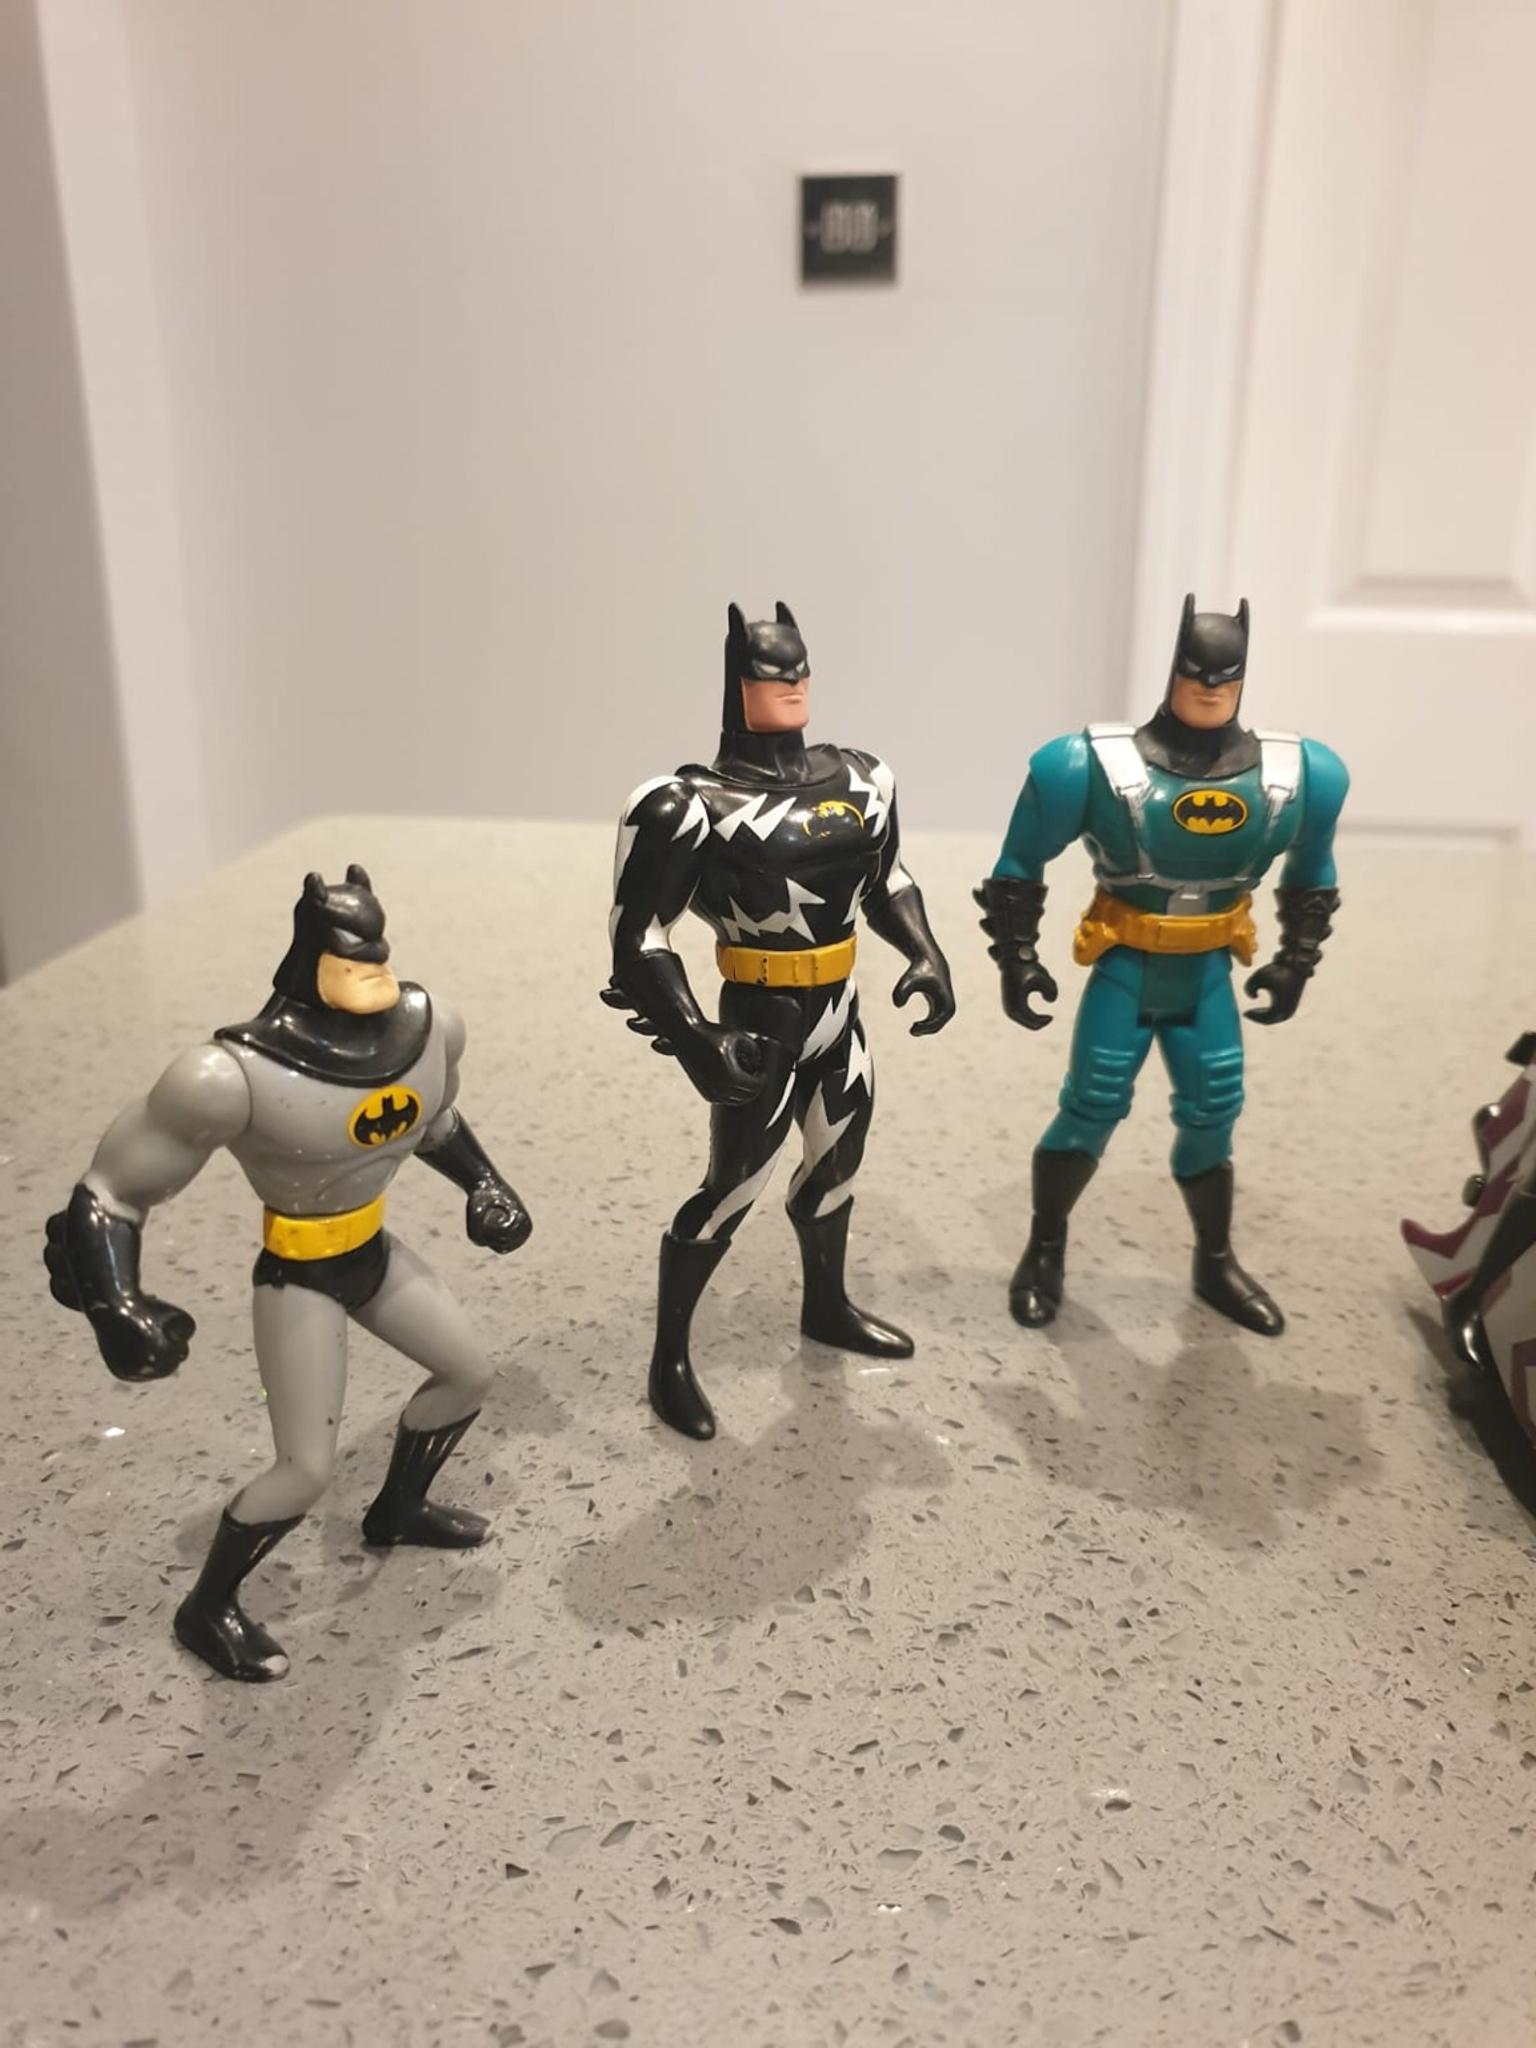 1994 dc comics batman figure